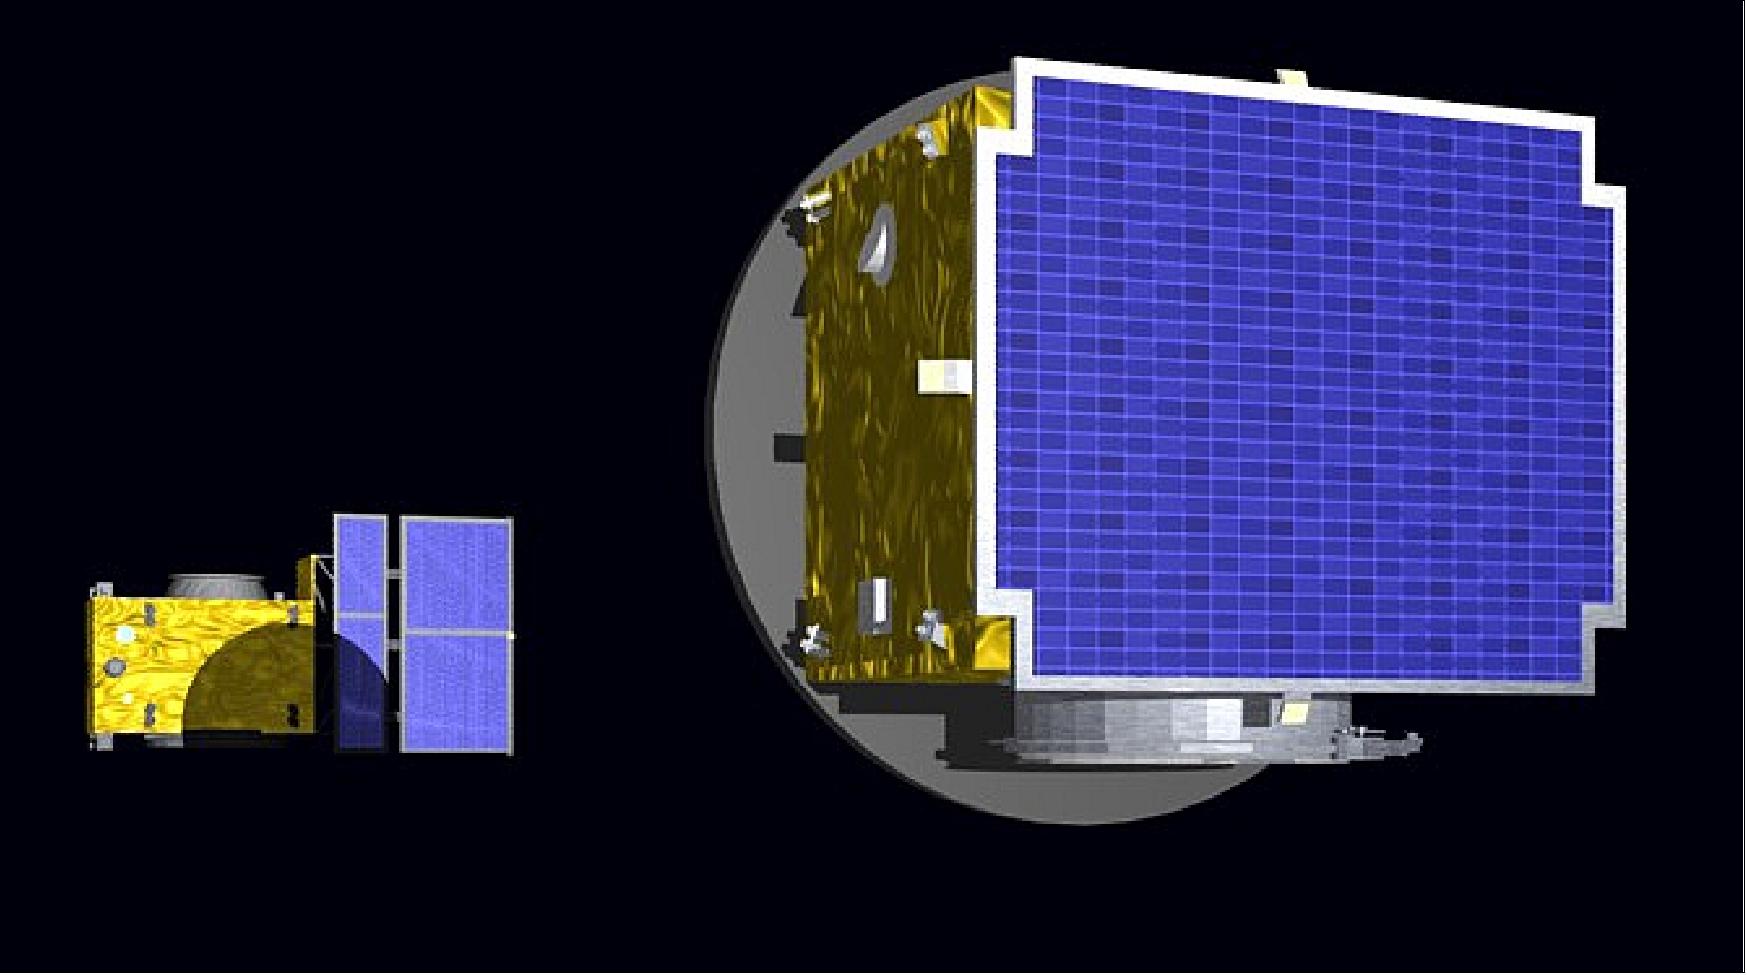 Figure 1: PROBA-3 spacecraft acquiring formation (image credit: PROBA-3 consortium)